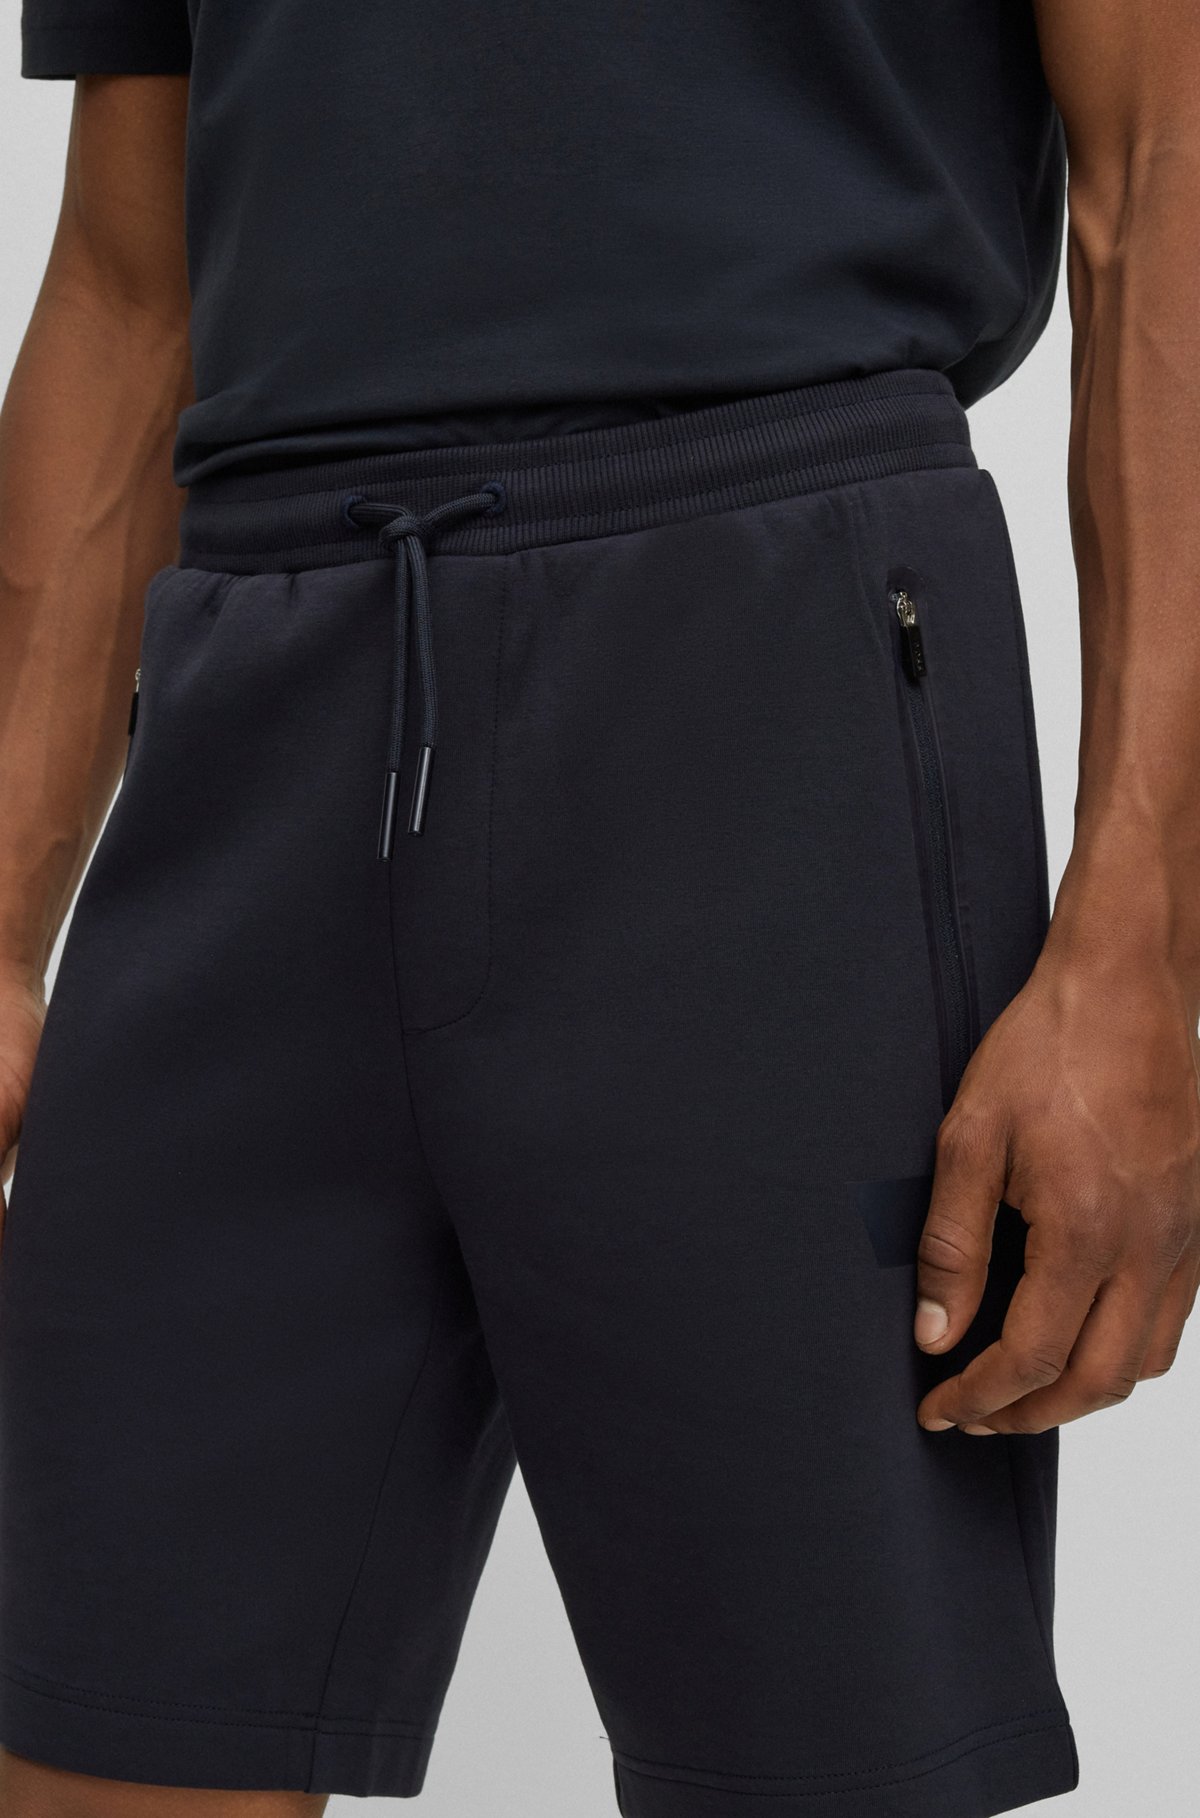 Shorts aus Baumwoll-Mix mit Tunnelzug und Logo-Streifen, Dunkelblau